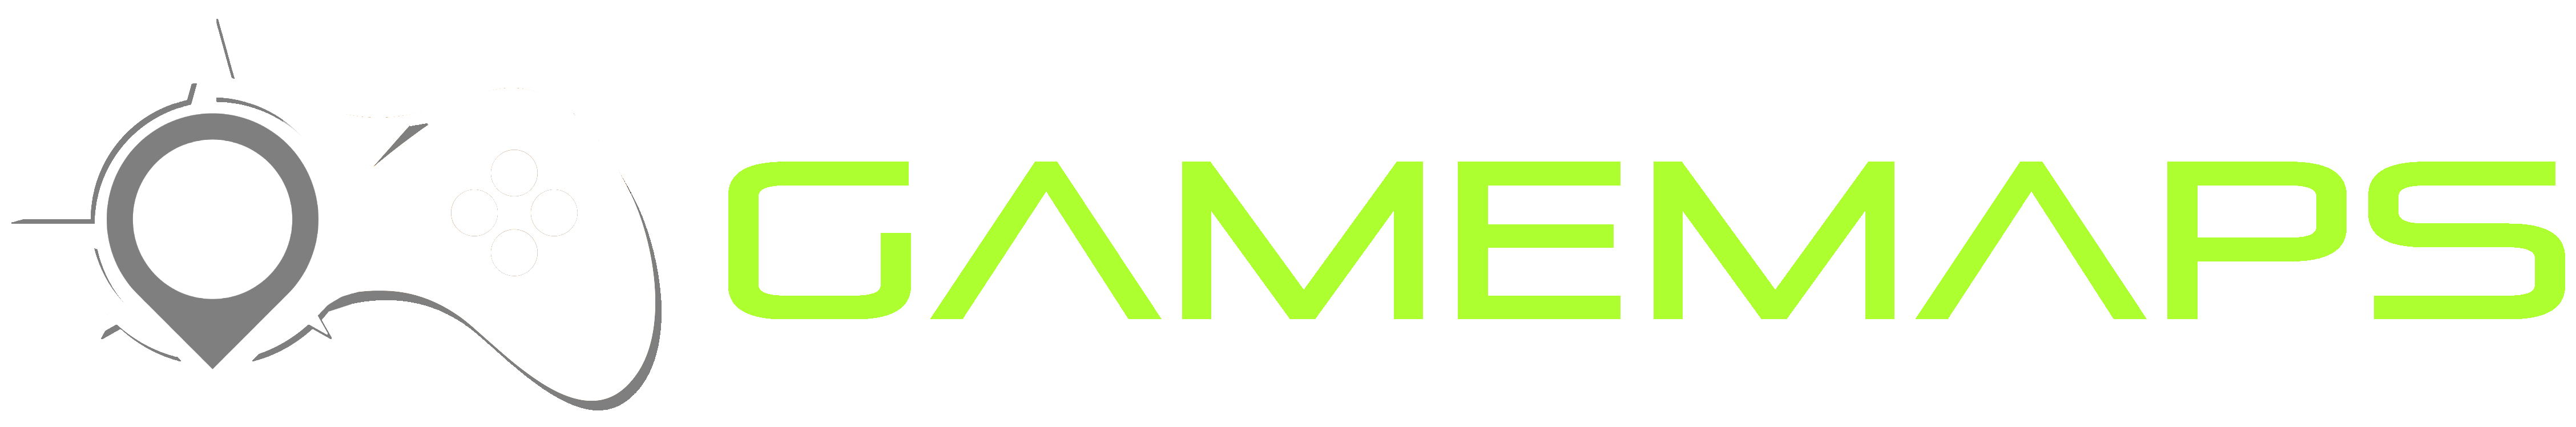 Game Maps Logo